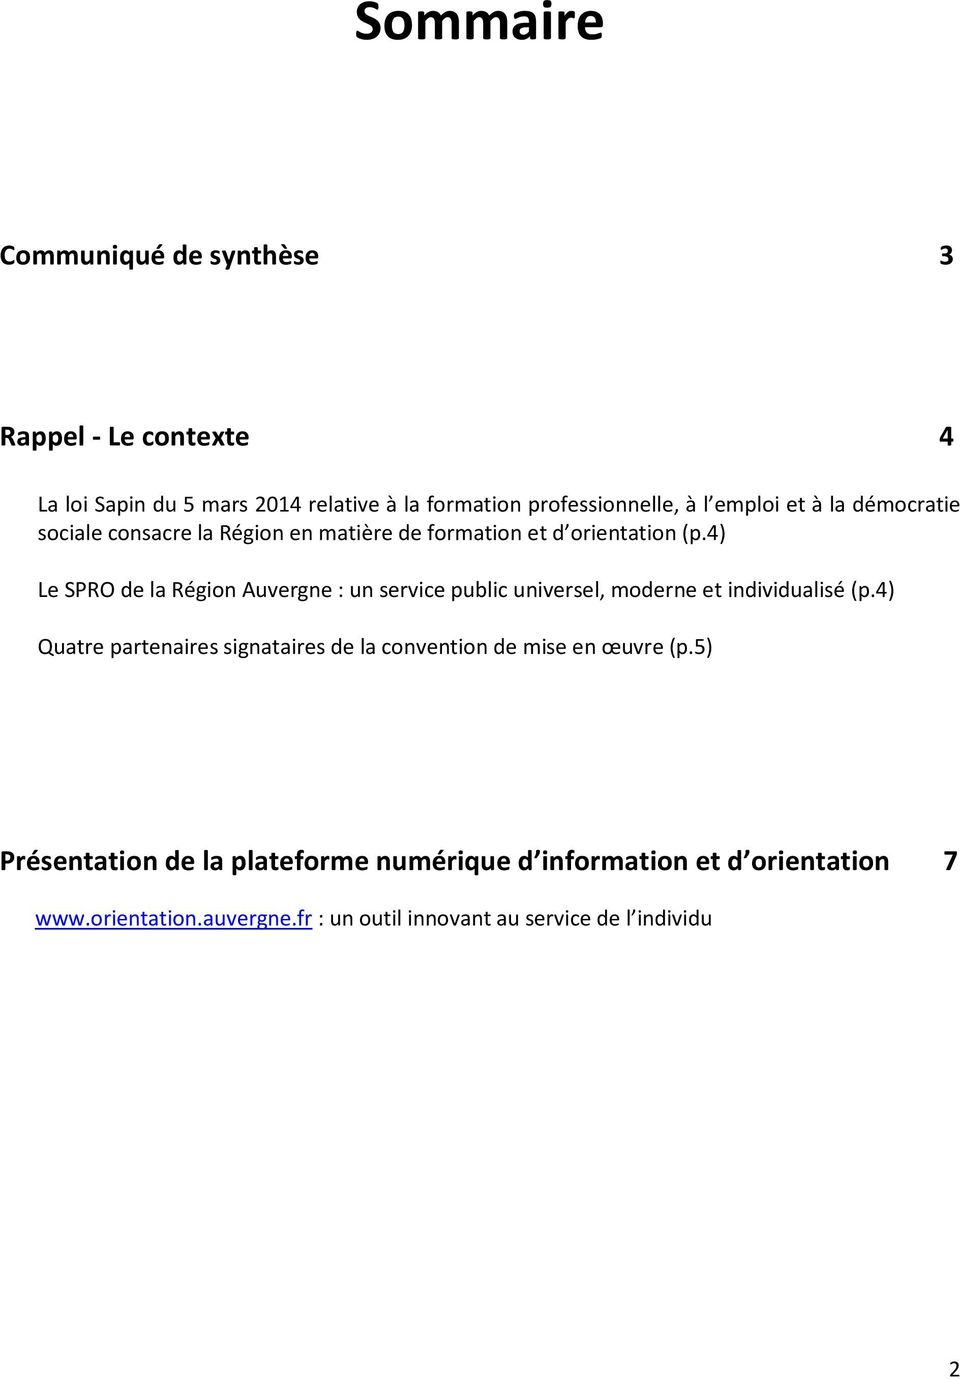 4) Le SPRO de la Région Auvergne : un service public universel, moderne et individualisé (p.